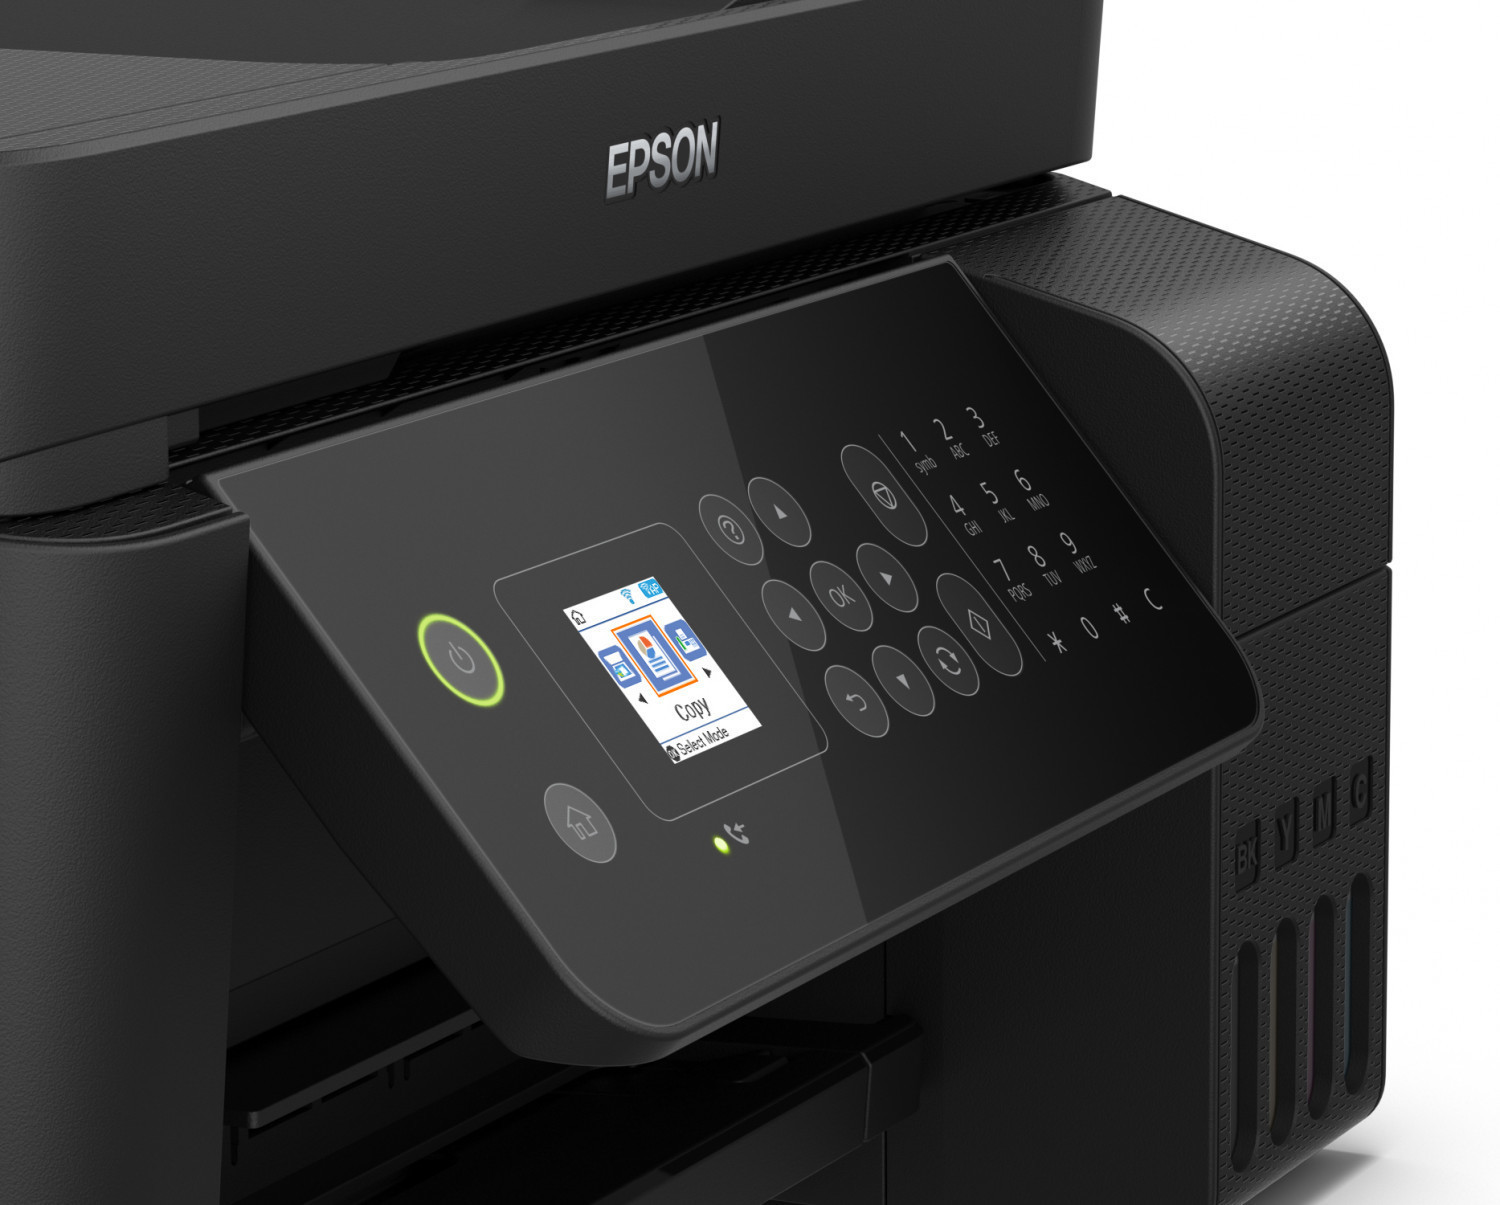 Epson ET-4700 (EcoTank) : une imprimante sans cartouche très séduisante ! -   : high-tech, web, geek, lifestyle / insolite et applications